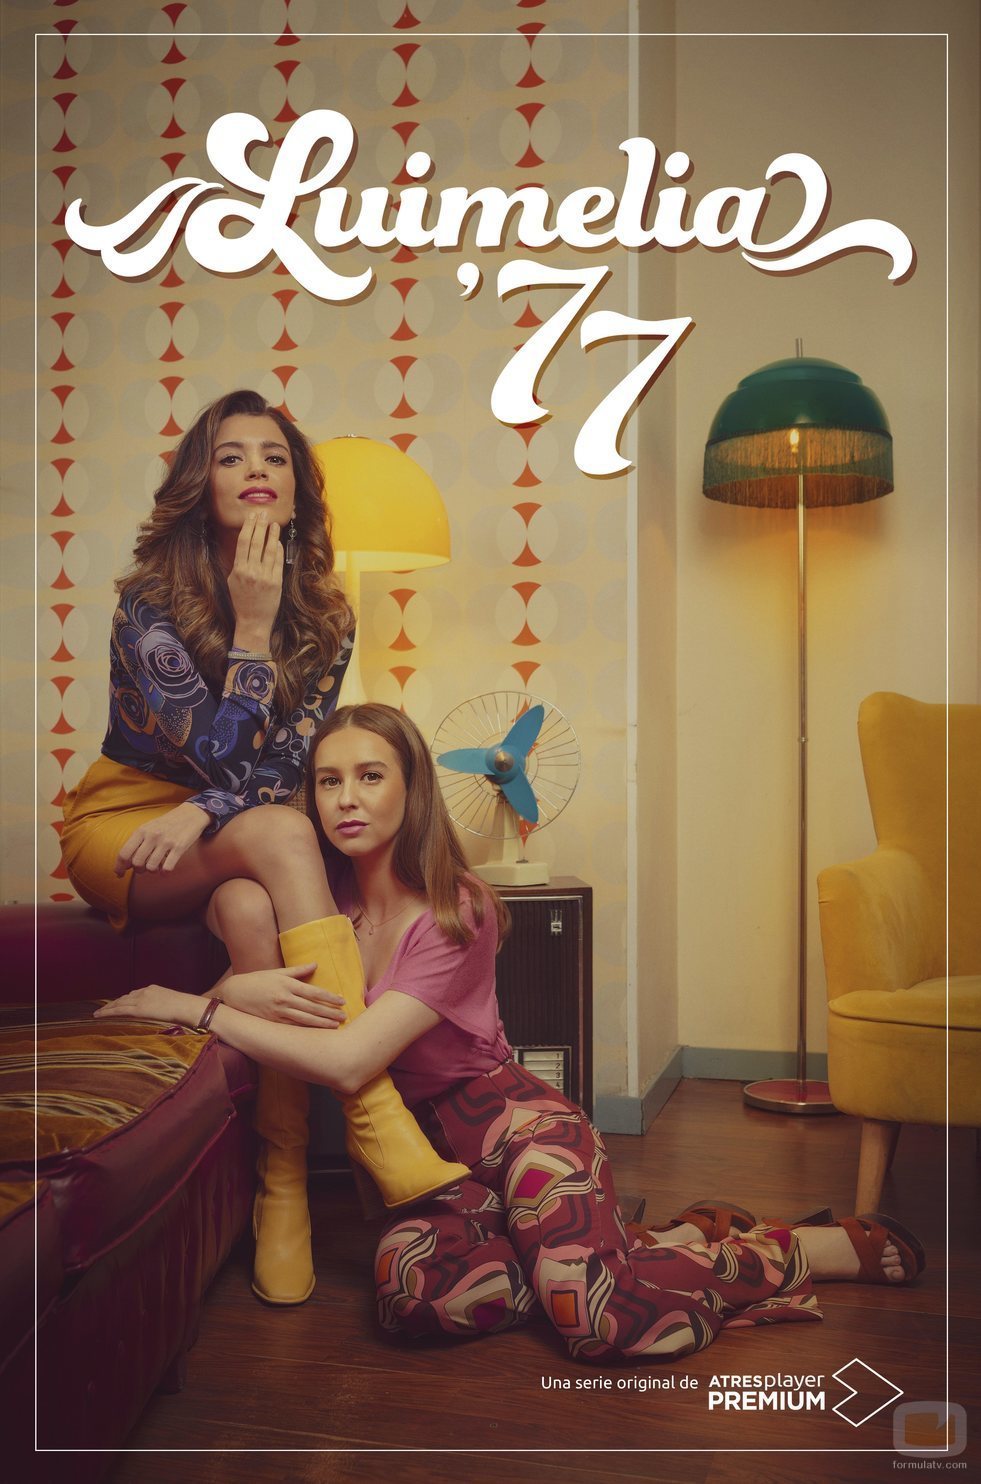 Cartel promocional con Amelia y Luisita en '#Luimelia 77'